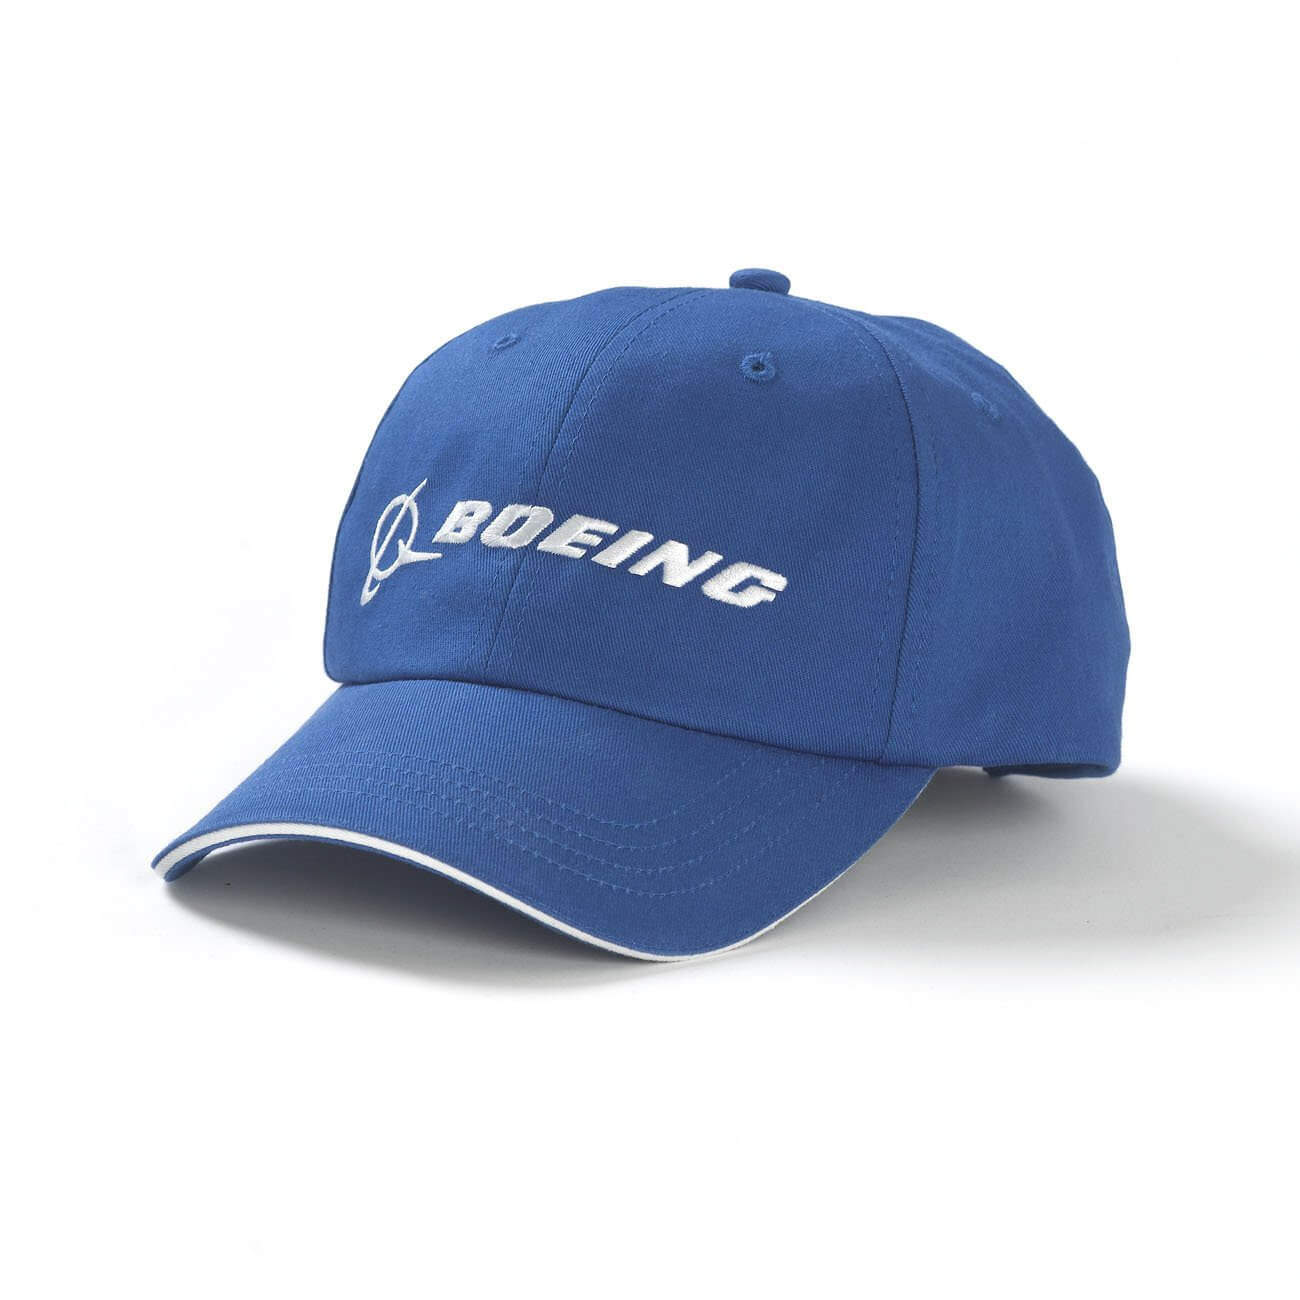 boeing-cap